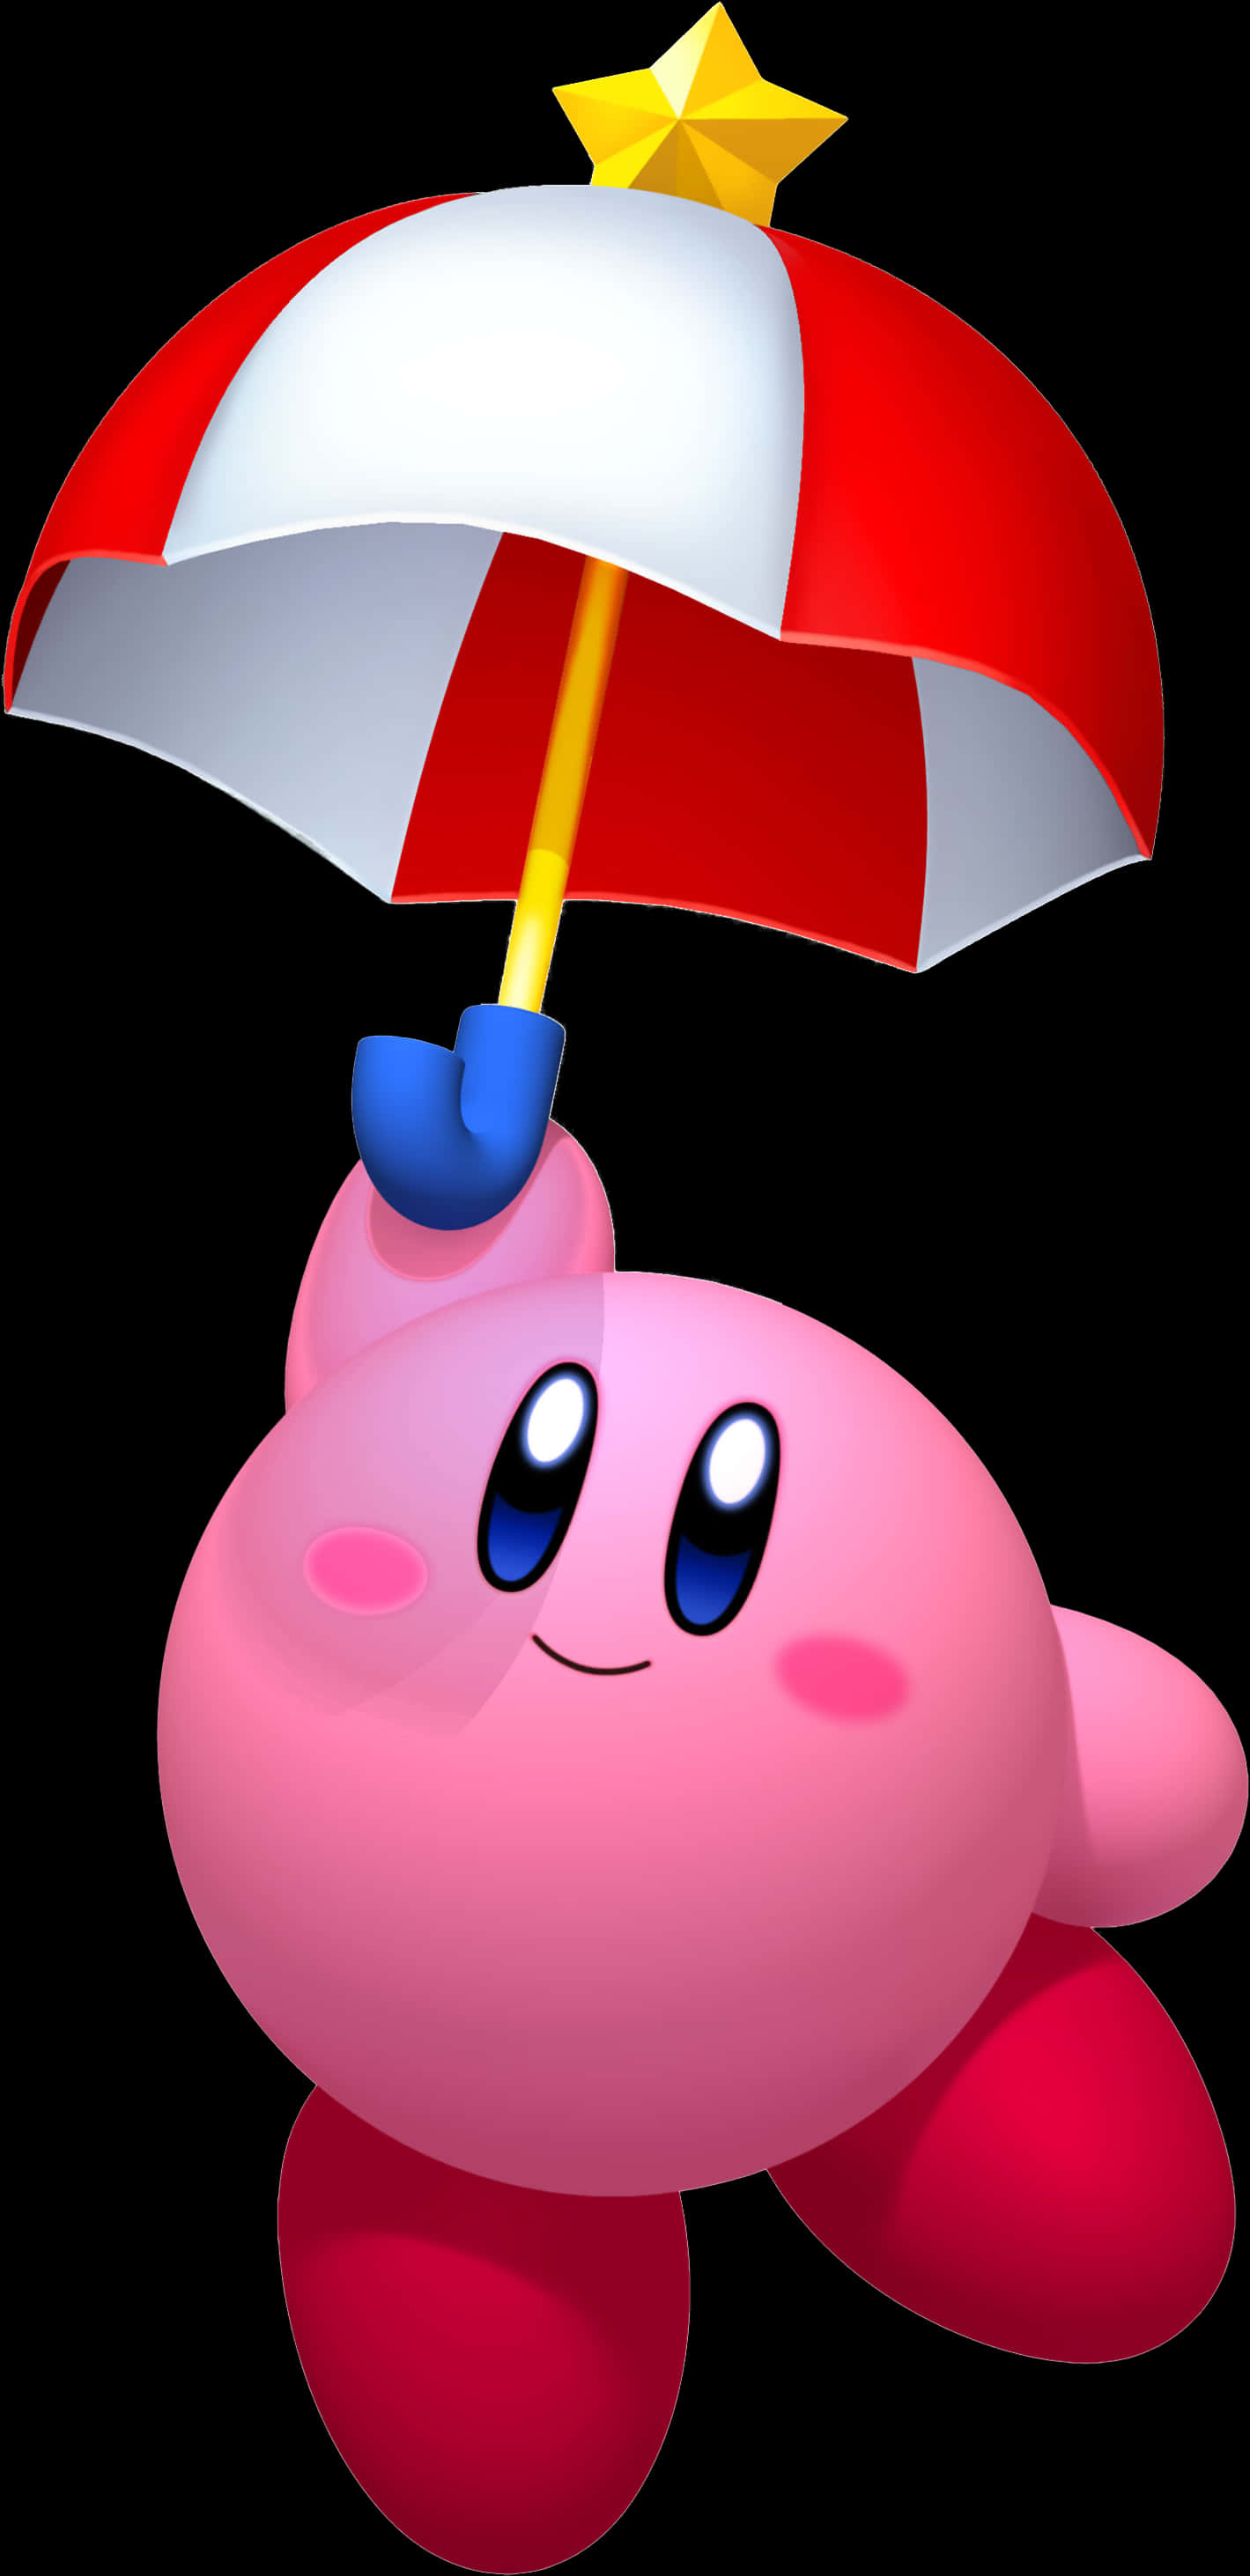 A Cartoon Character Holding An Umbrella